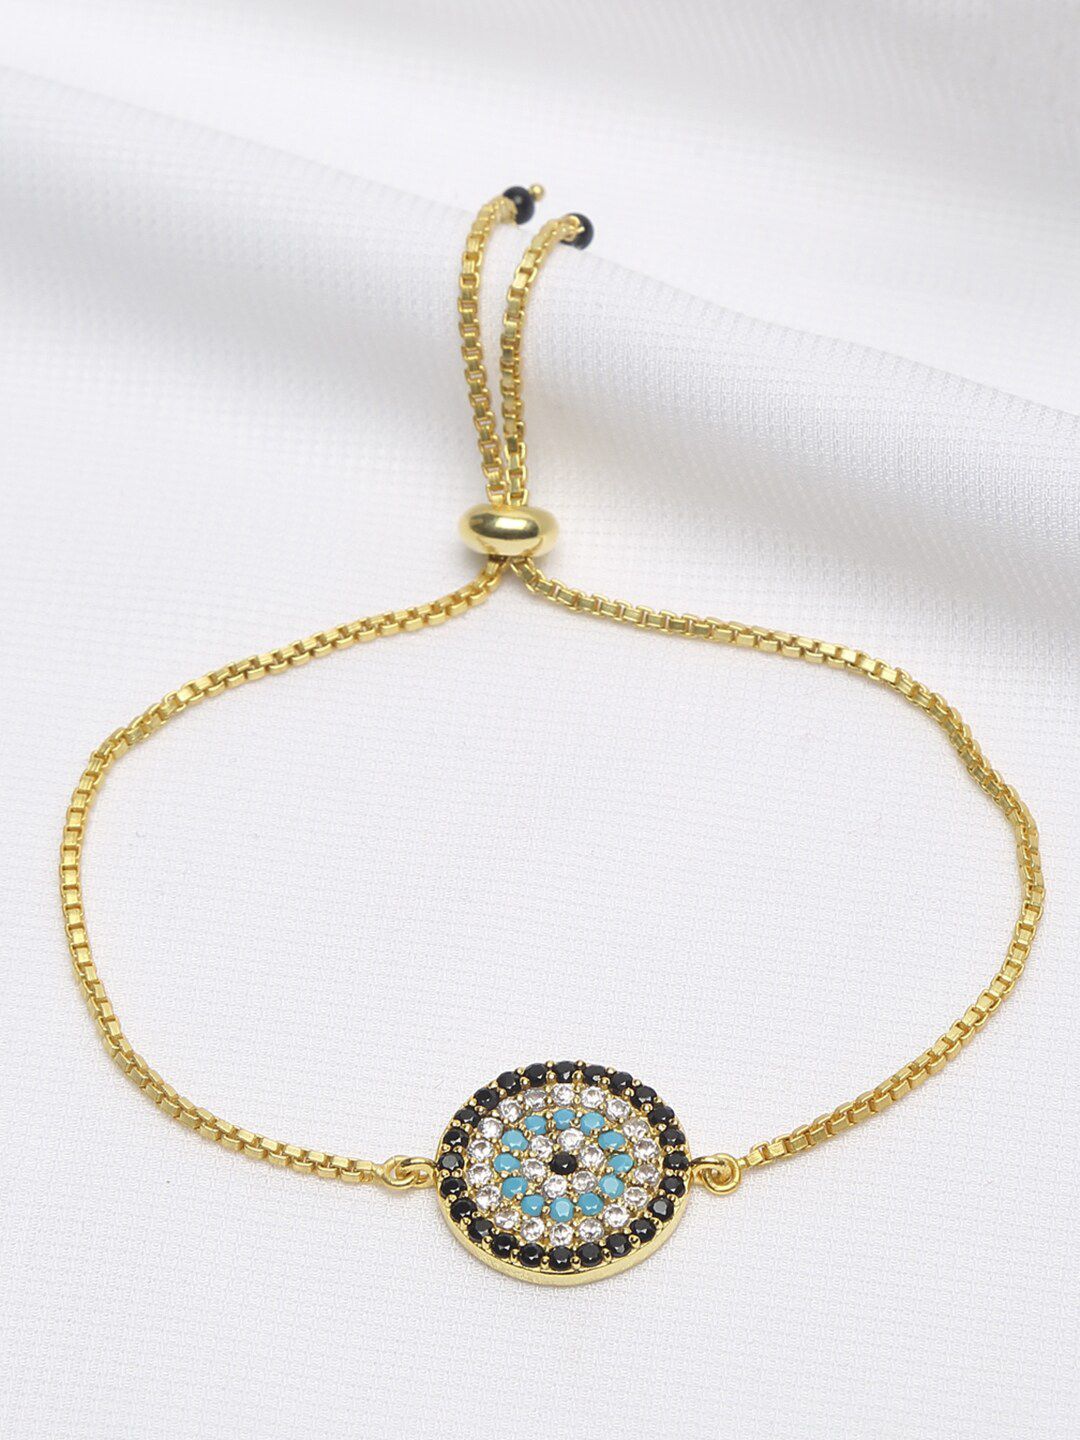 EK BY EKTA KAPOOR Women 22K Gold Plated Blue Gold-Plated Evil Eye Charm Bracelet Price in India